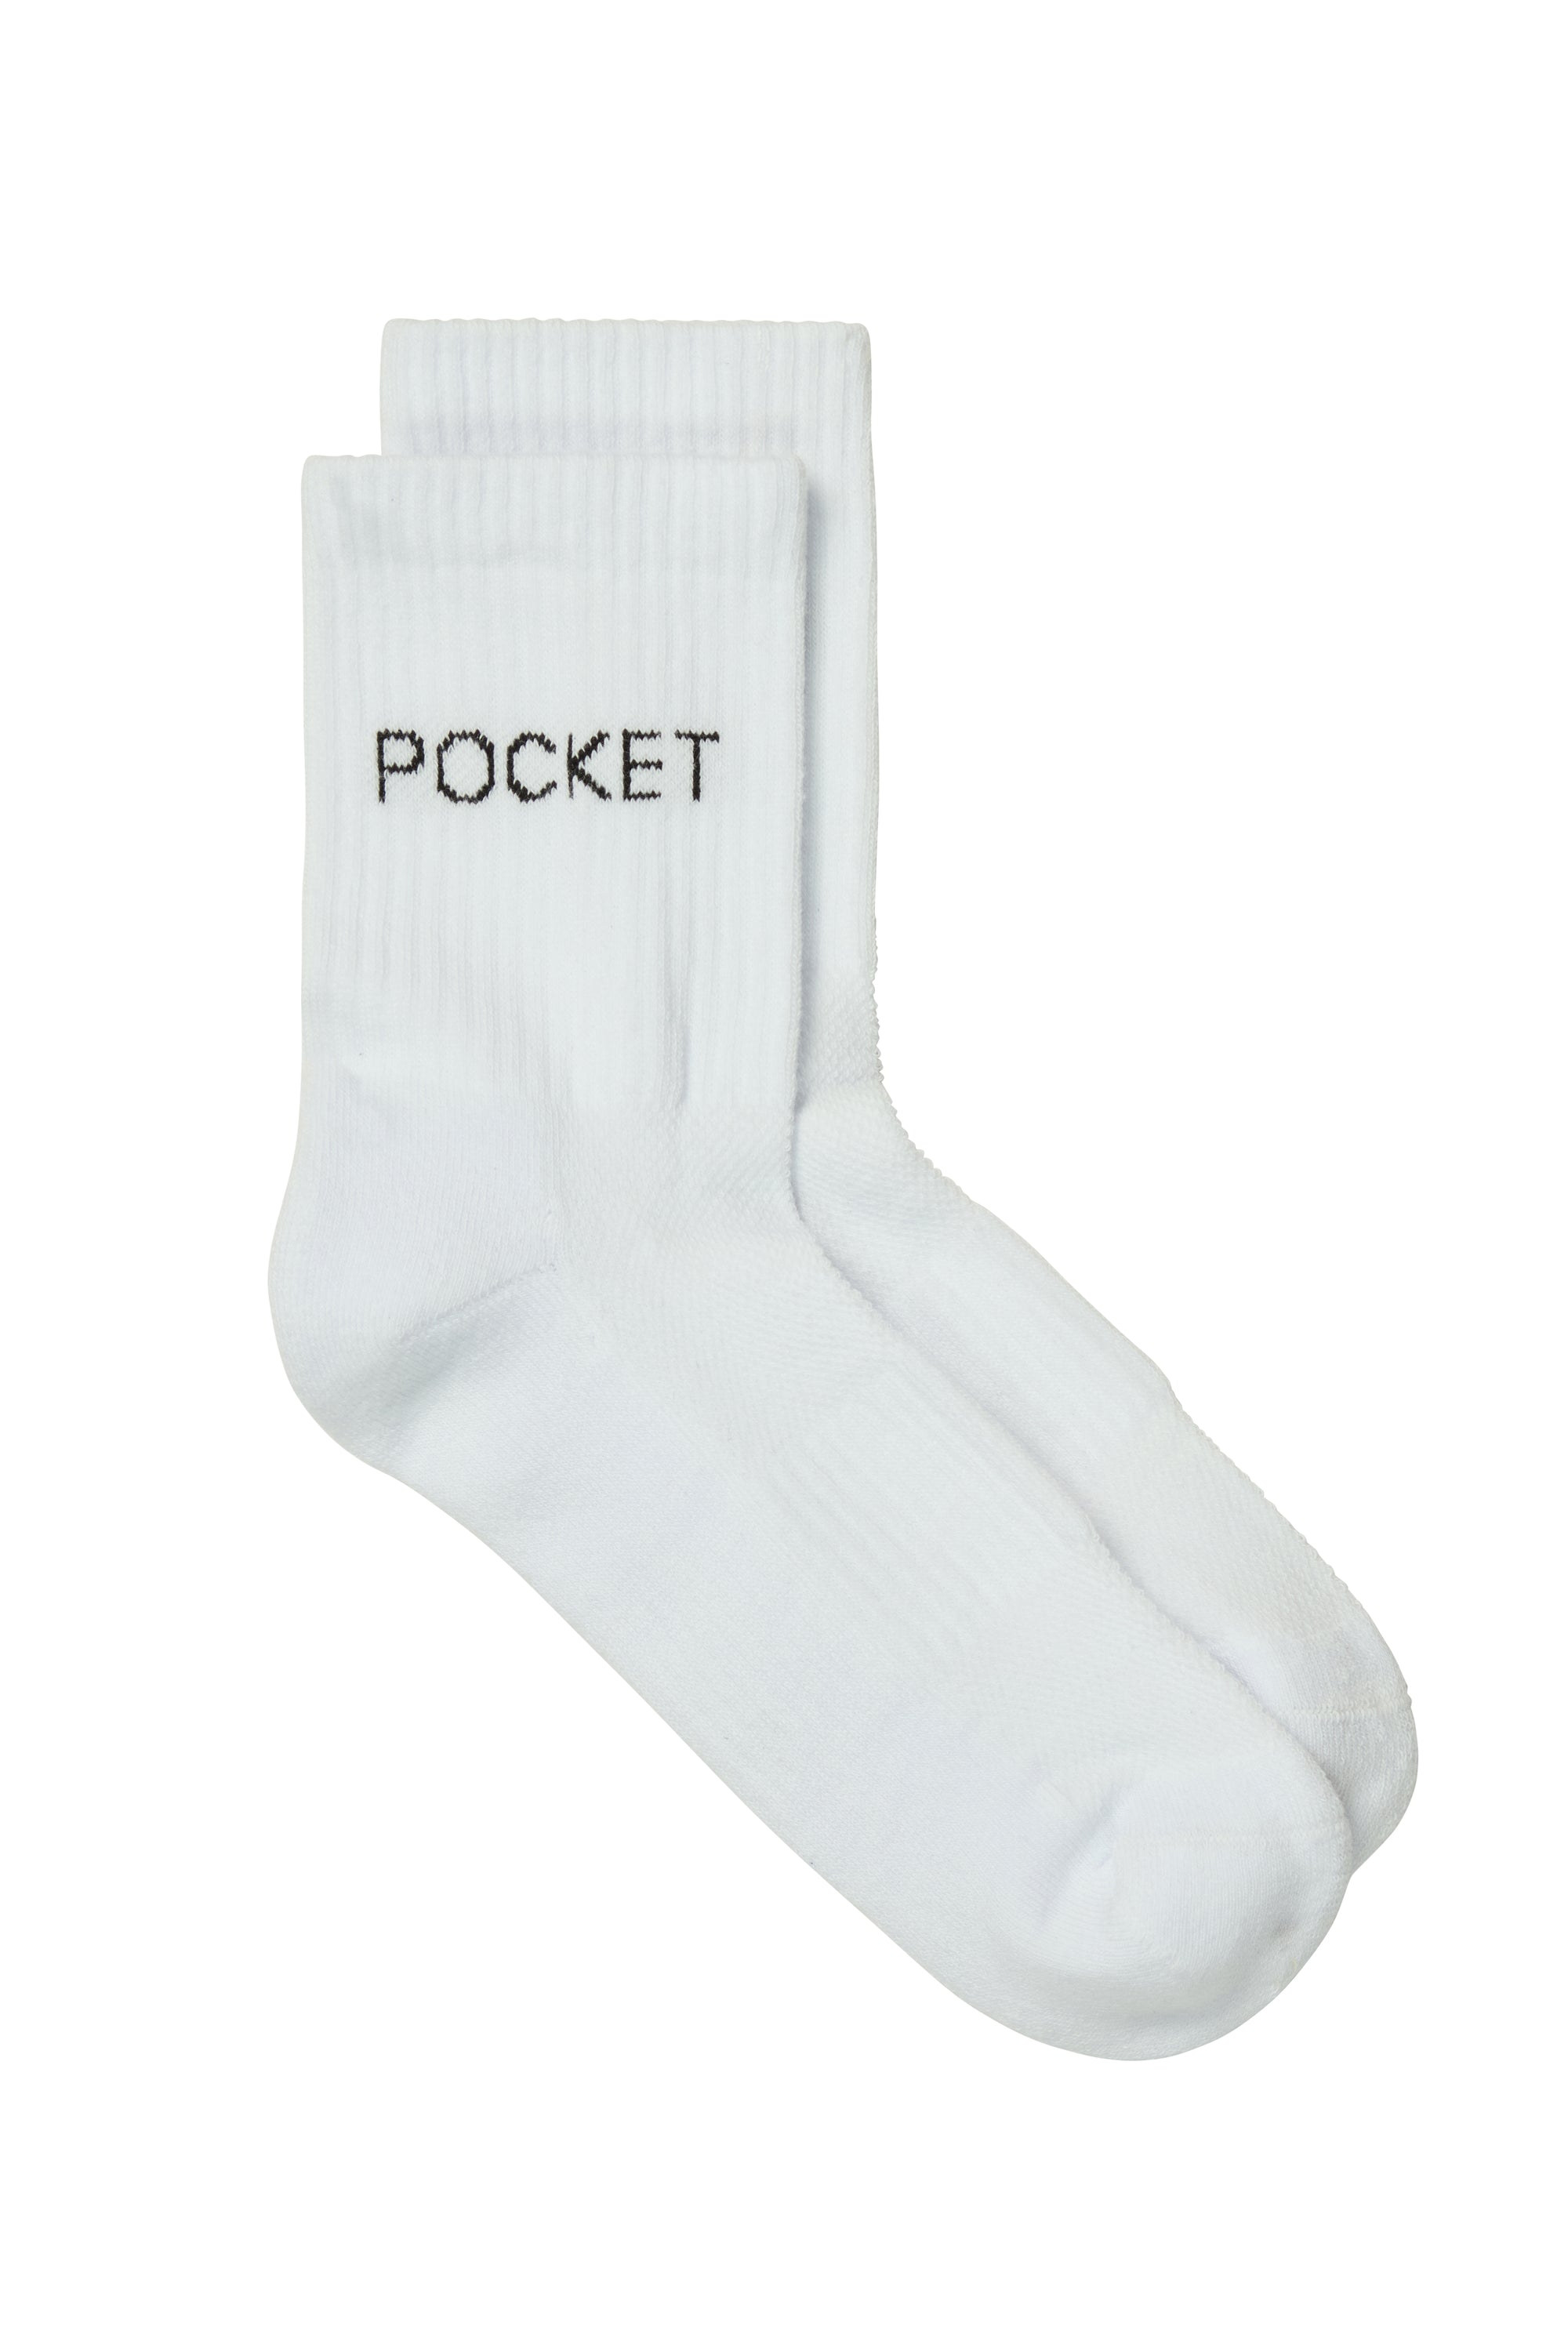 Pocket Socks - White